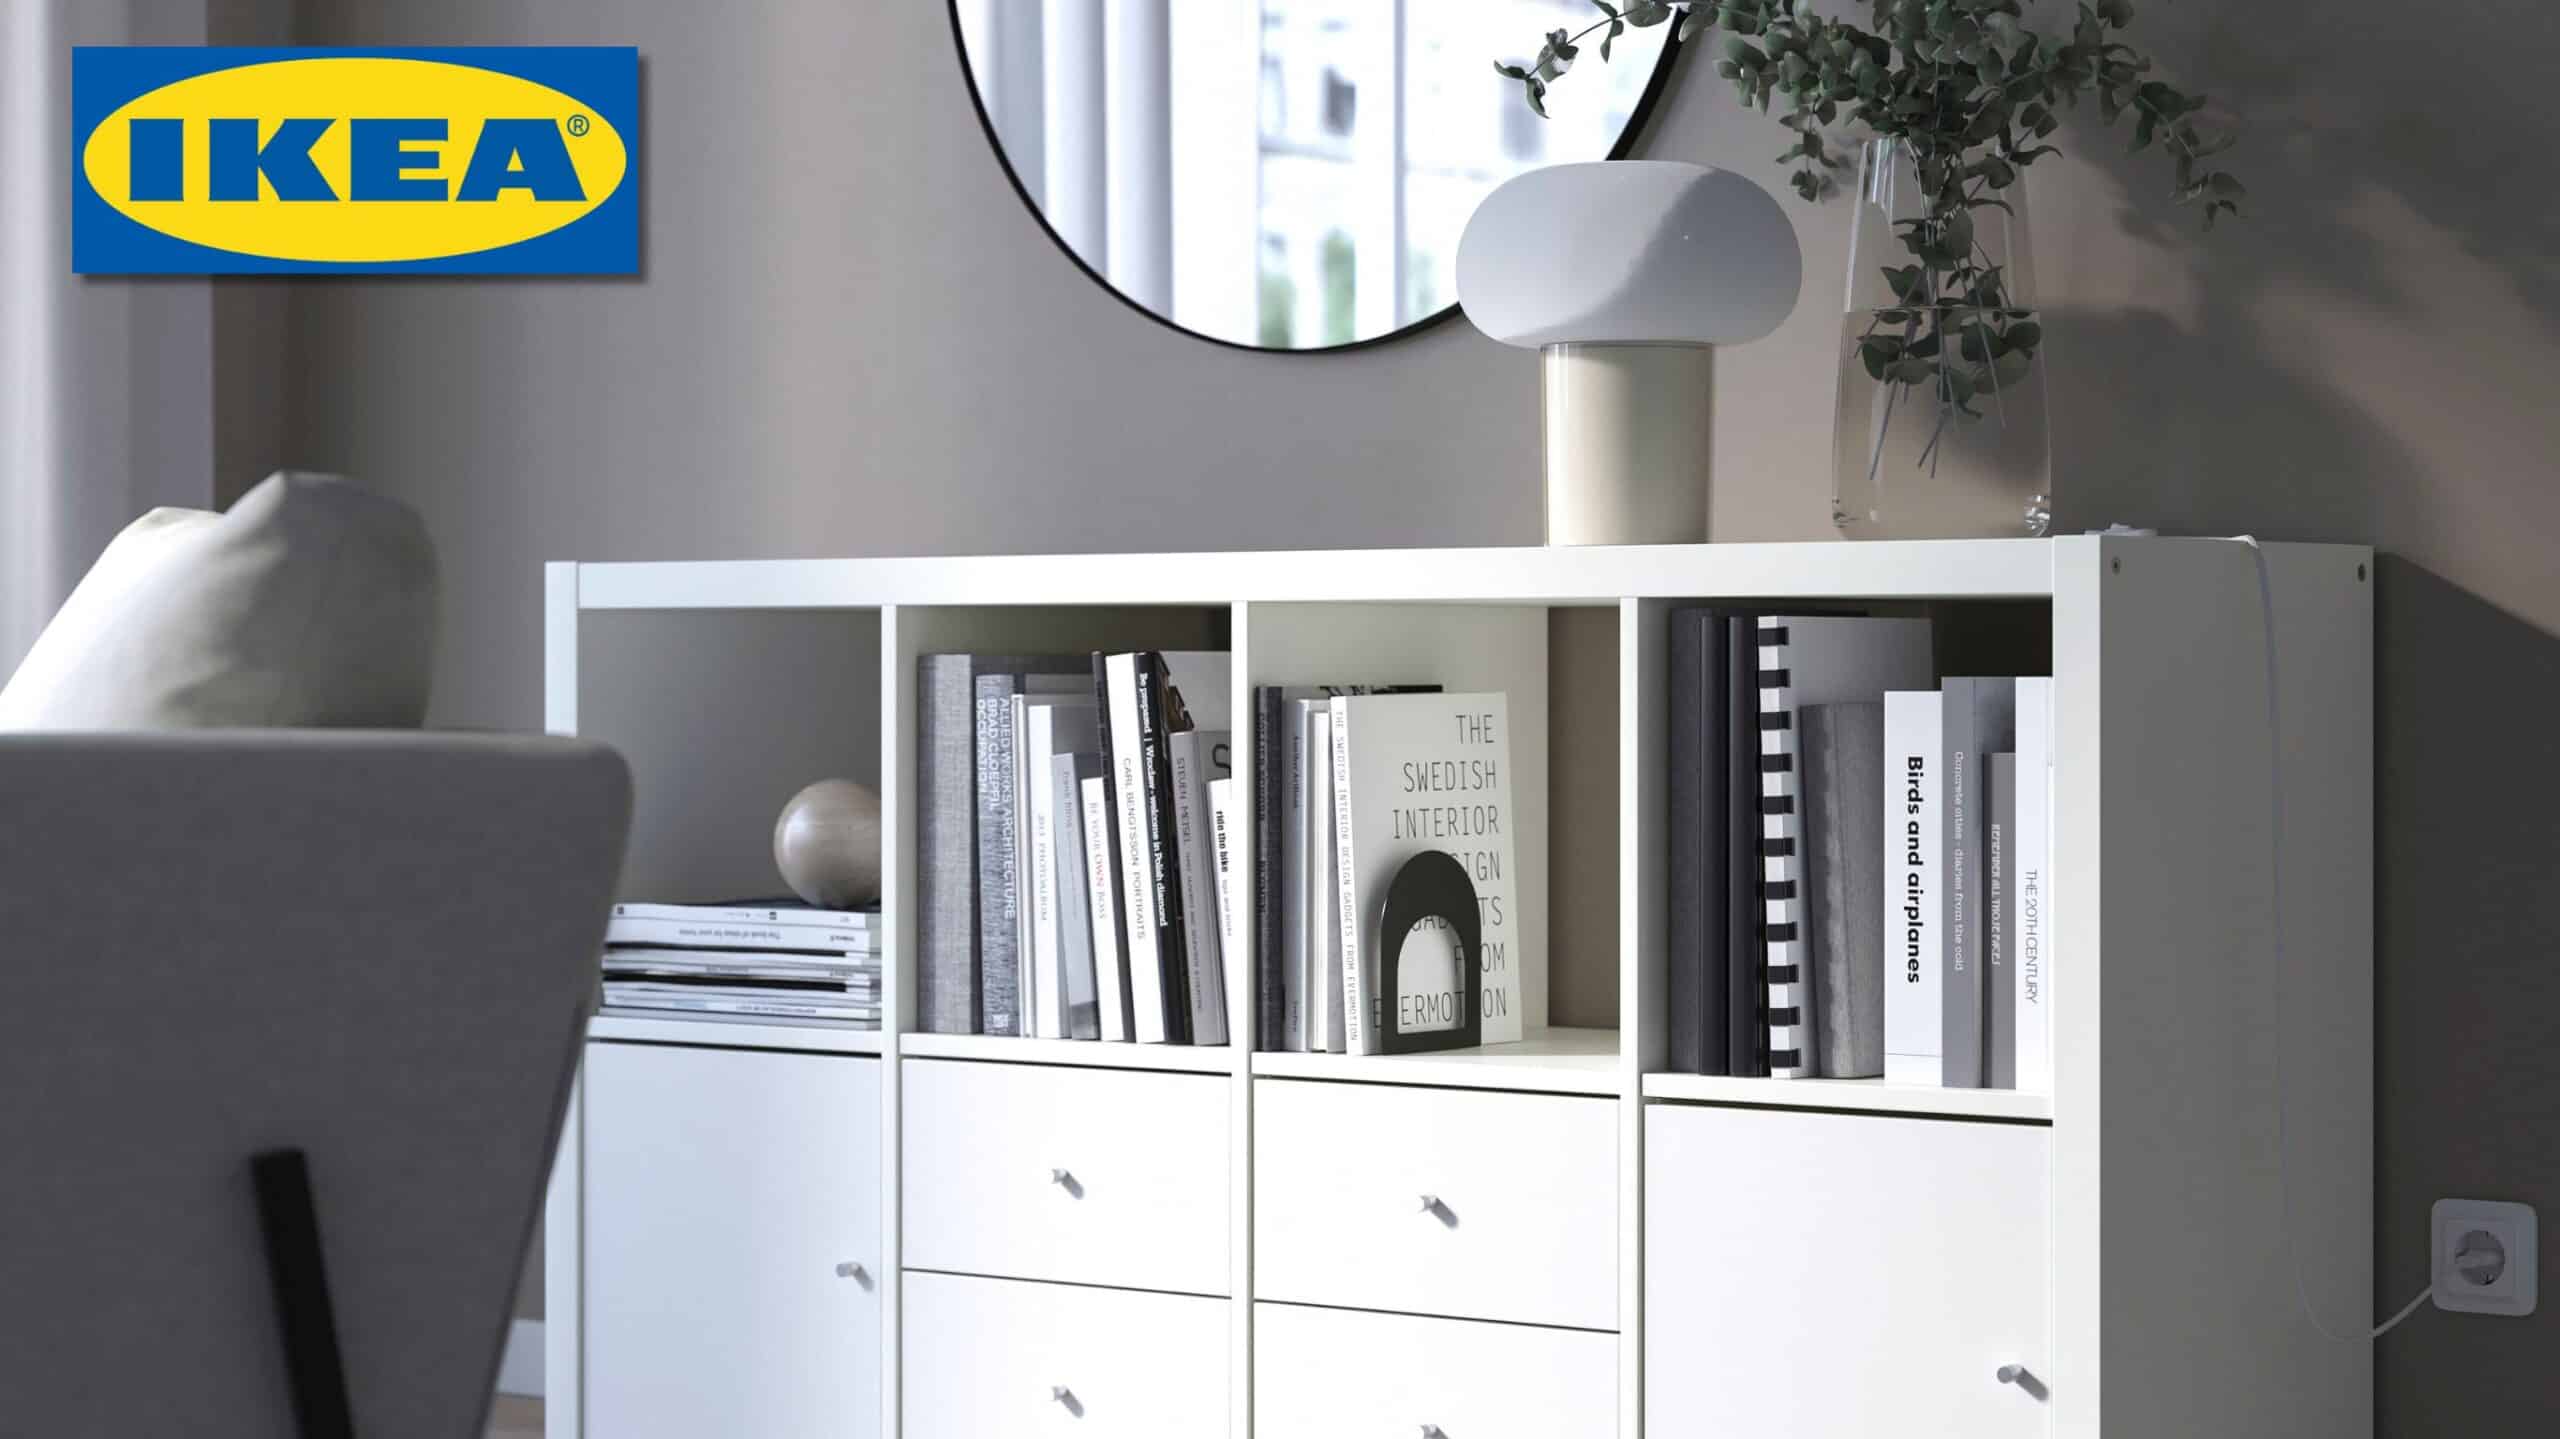 IKEA espacio en el hogar